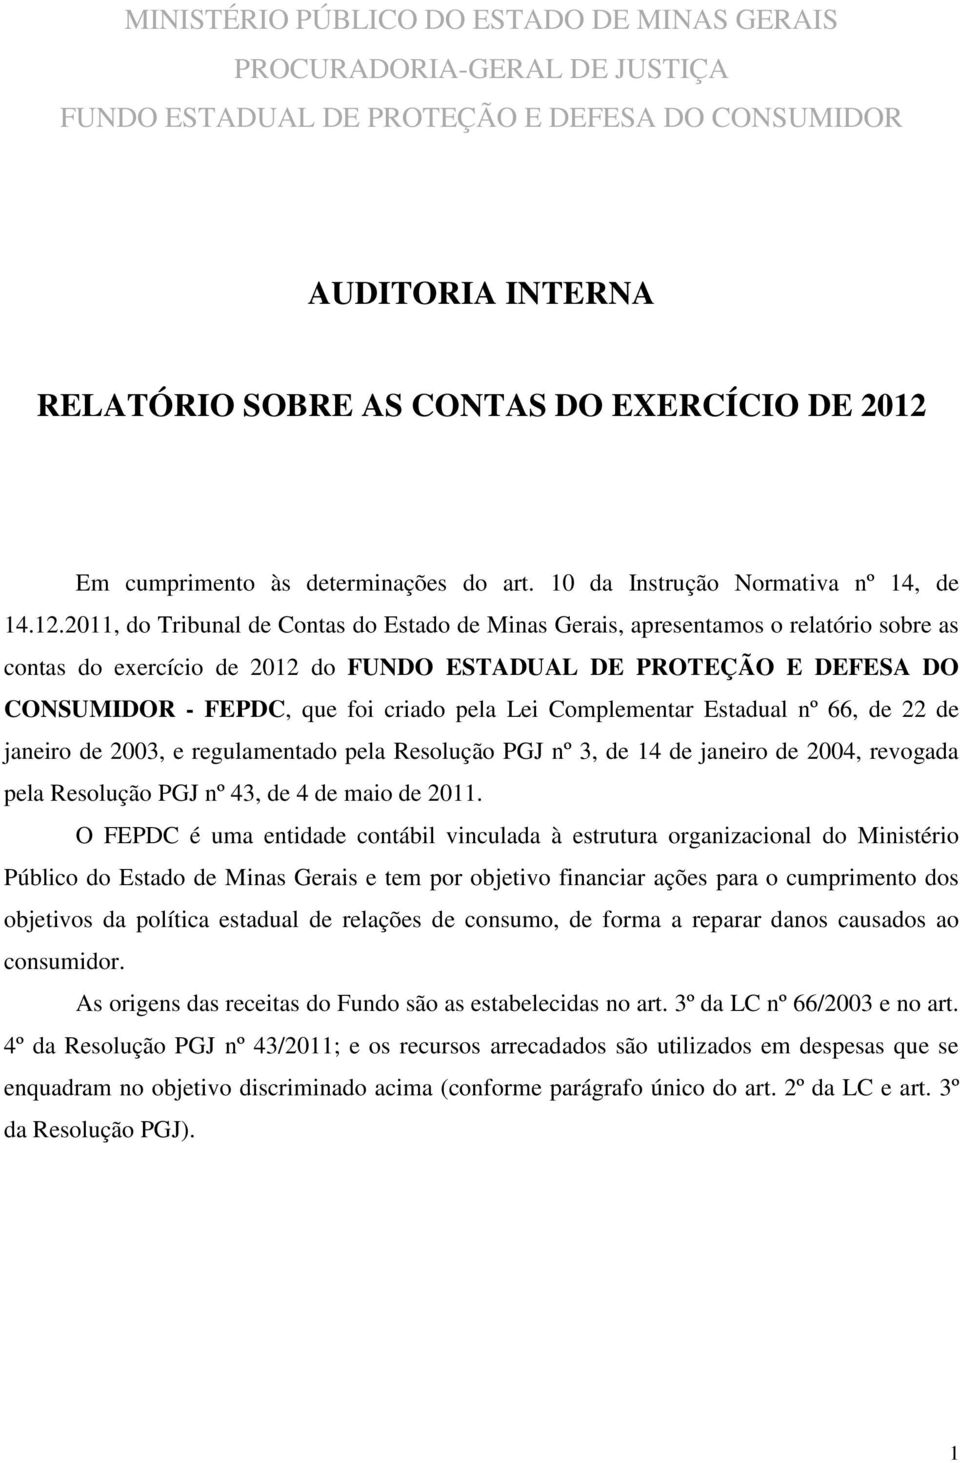 2011, do Tribunal de Contas do Estado de Minas Gerais, apresentamos o relatório sobre as contas do exercício de 2012 do FUNDO ESTADUAL DE PROTEÇÃO E DEFESA DO CONSUMIDOR - FEPDC, que foi criado pela